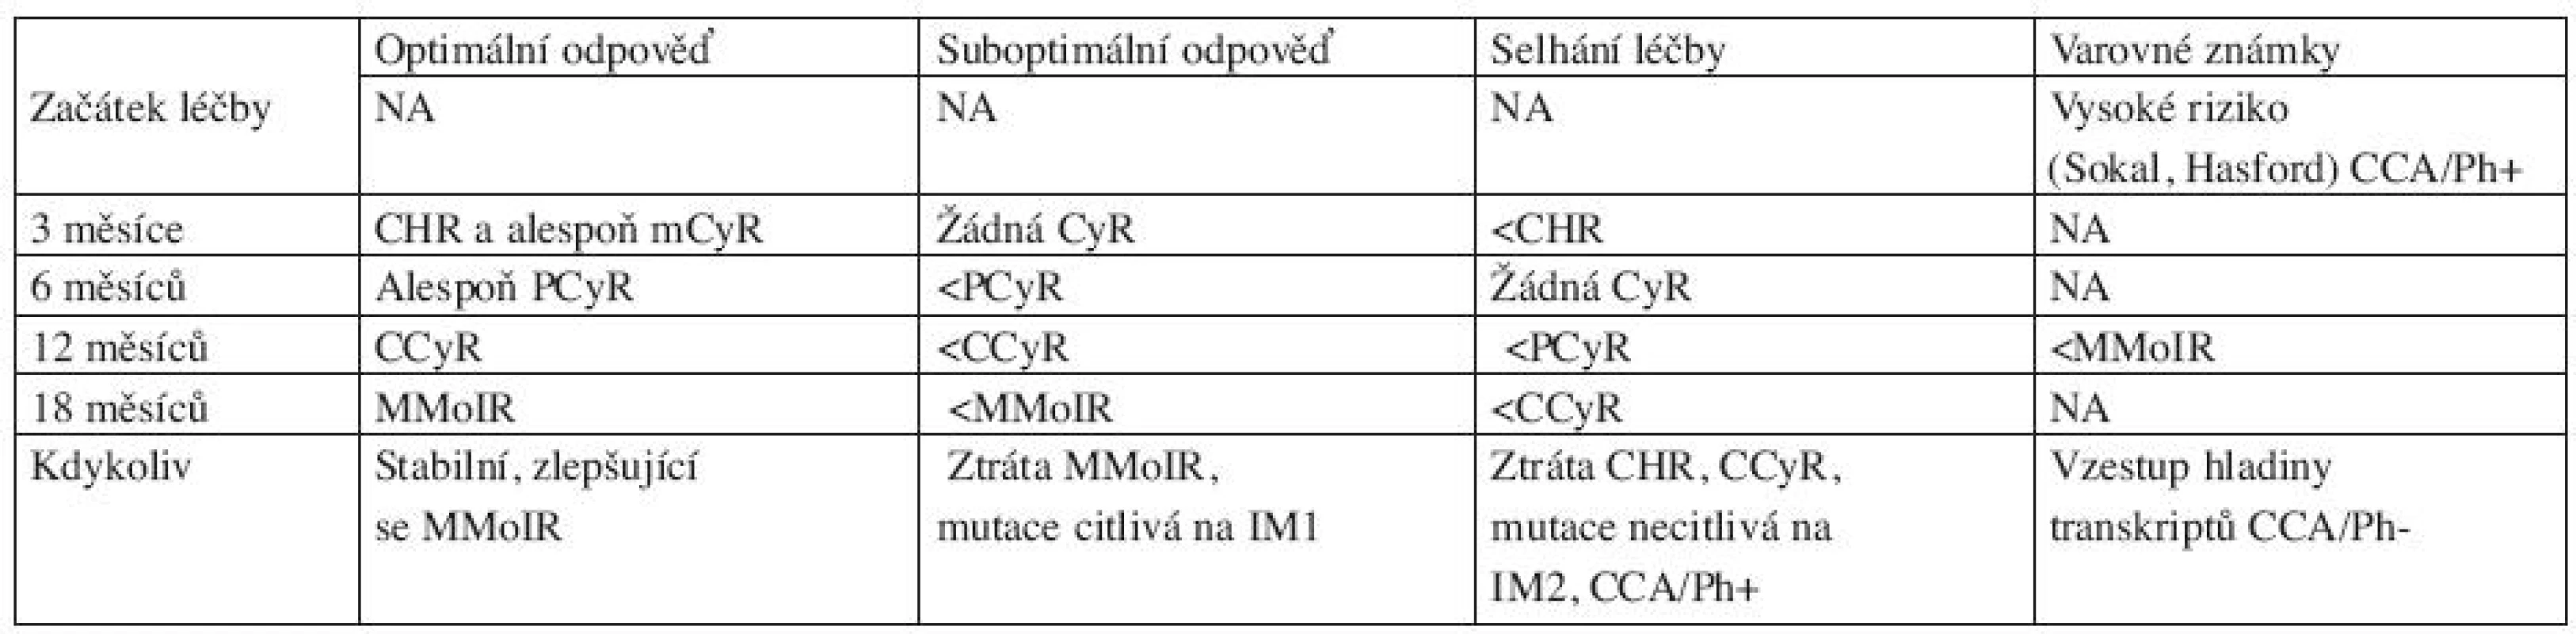 Definice optimální, suboptimální odpovědi a selhání léčby u pacientů léčených IM v první linii v CP-CML (dle ELN 2009 doporučení) (7).